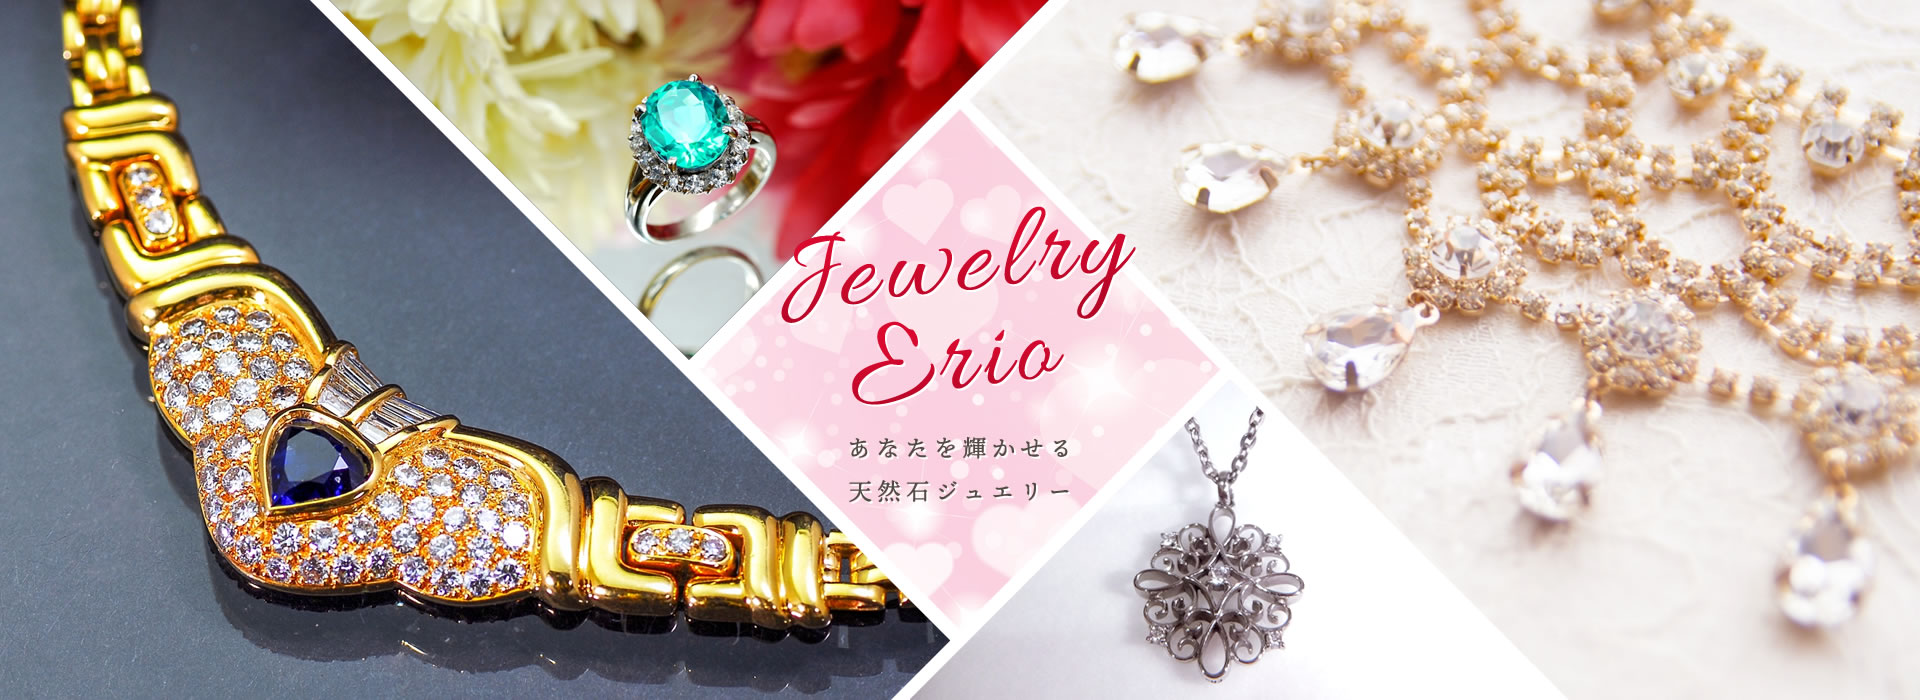 Jewelry Erio あなたを輝かせる天然石ジュエリー